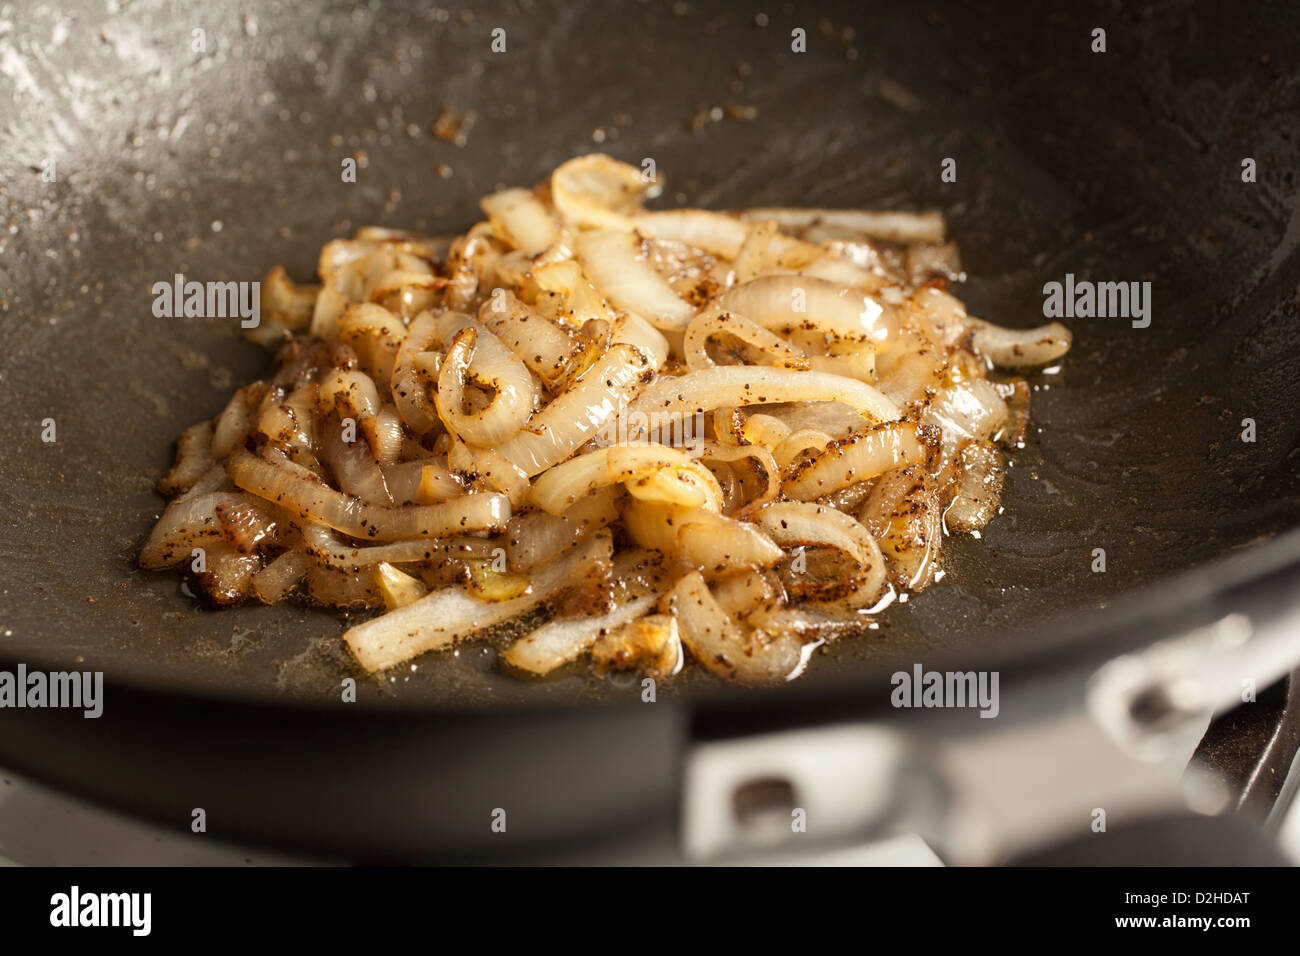 Frire les oignons dans une grande casserole Banque D'Images